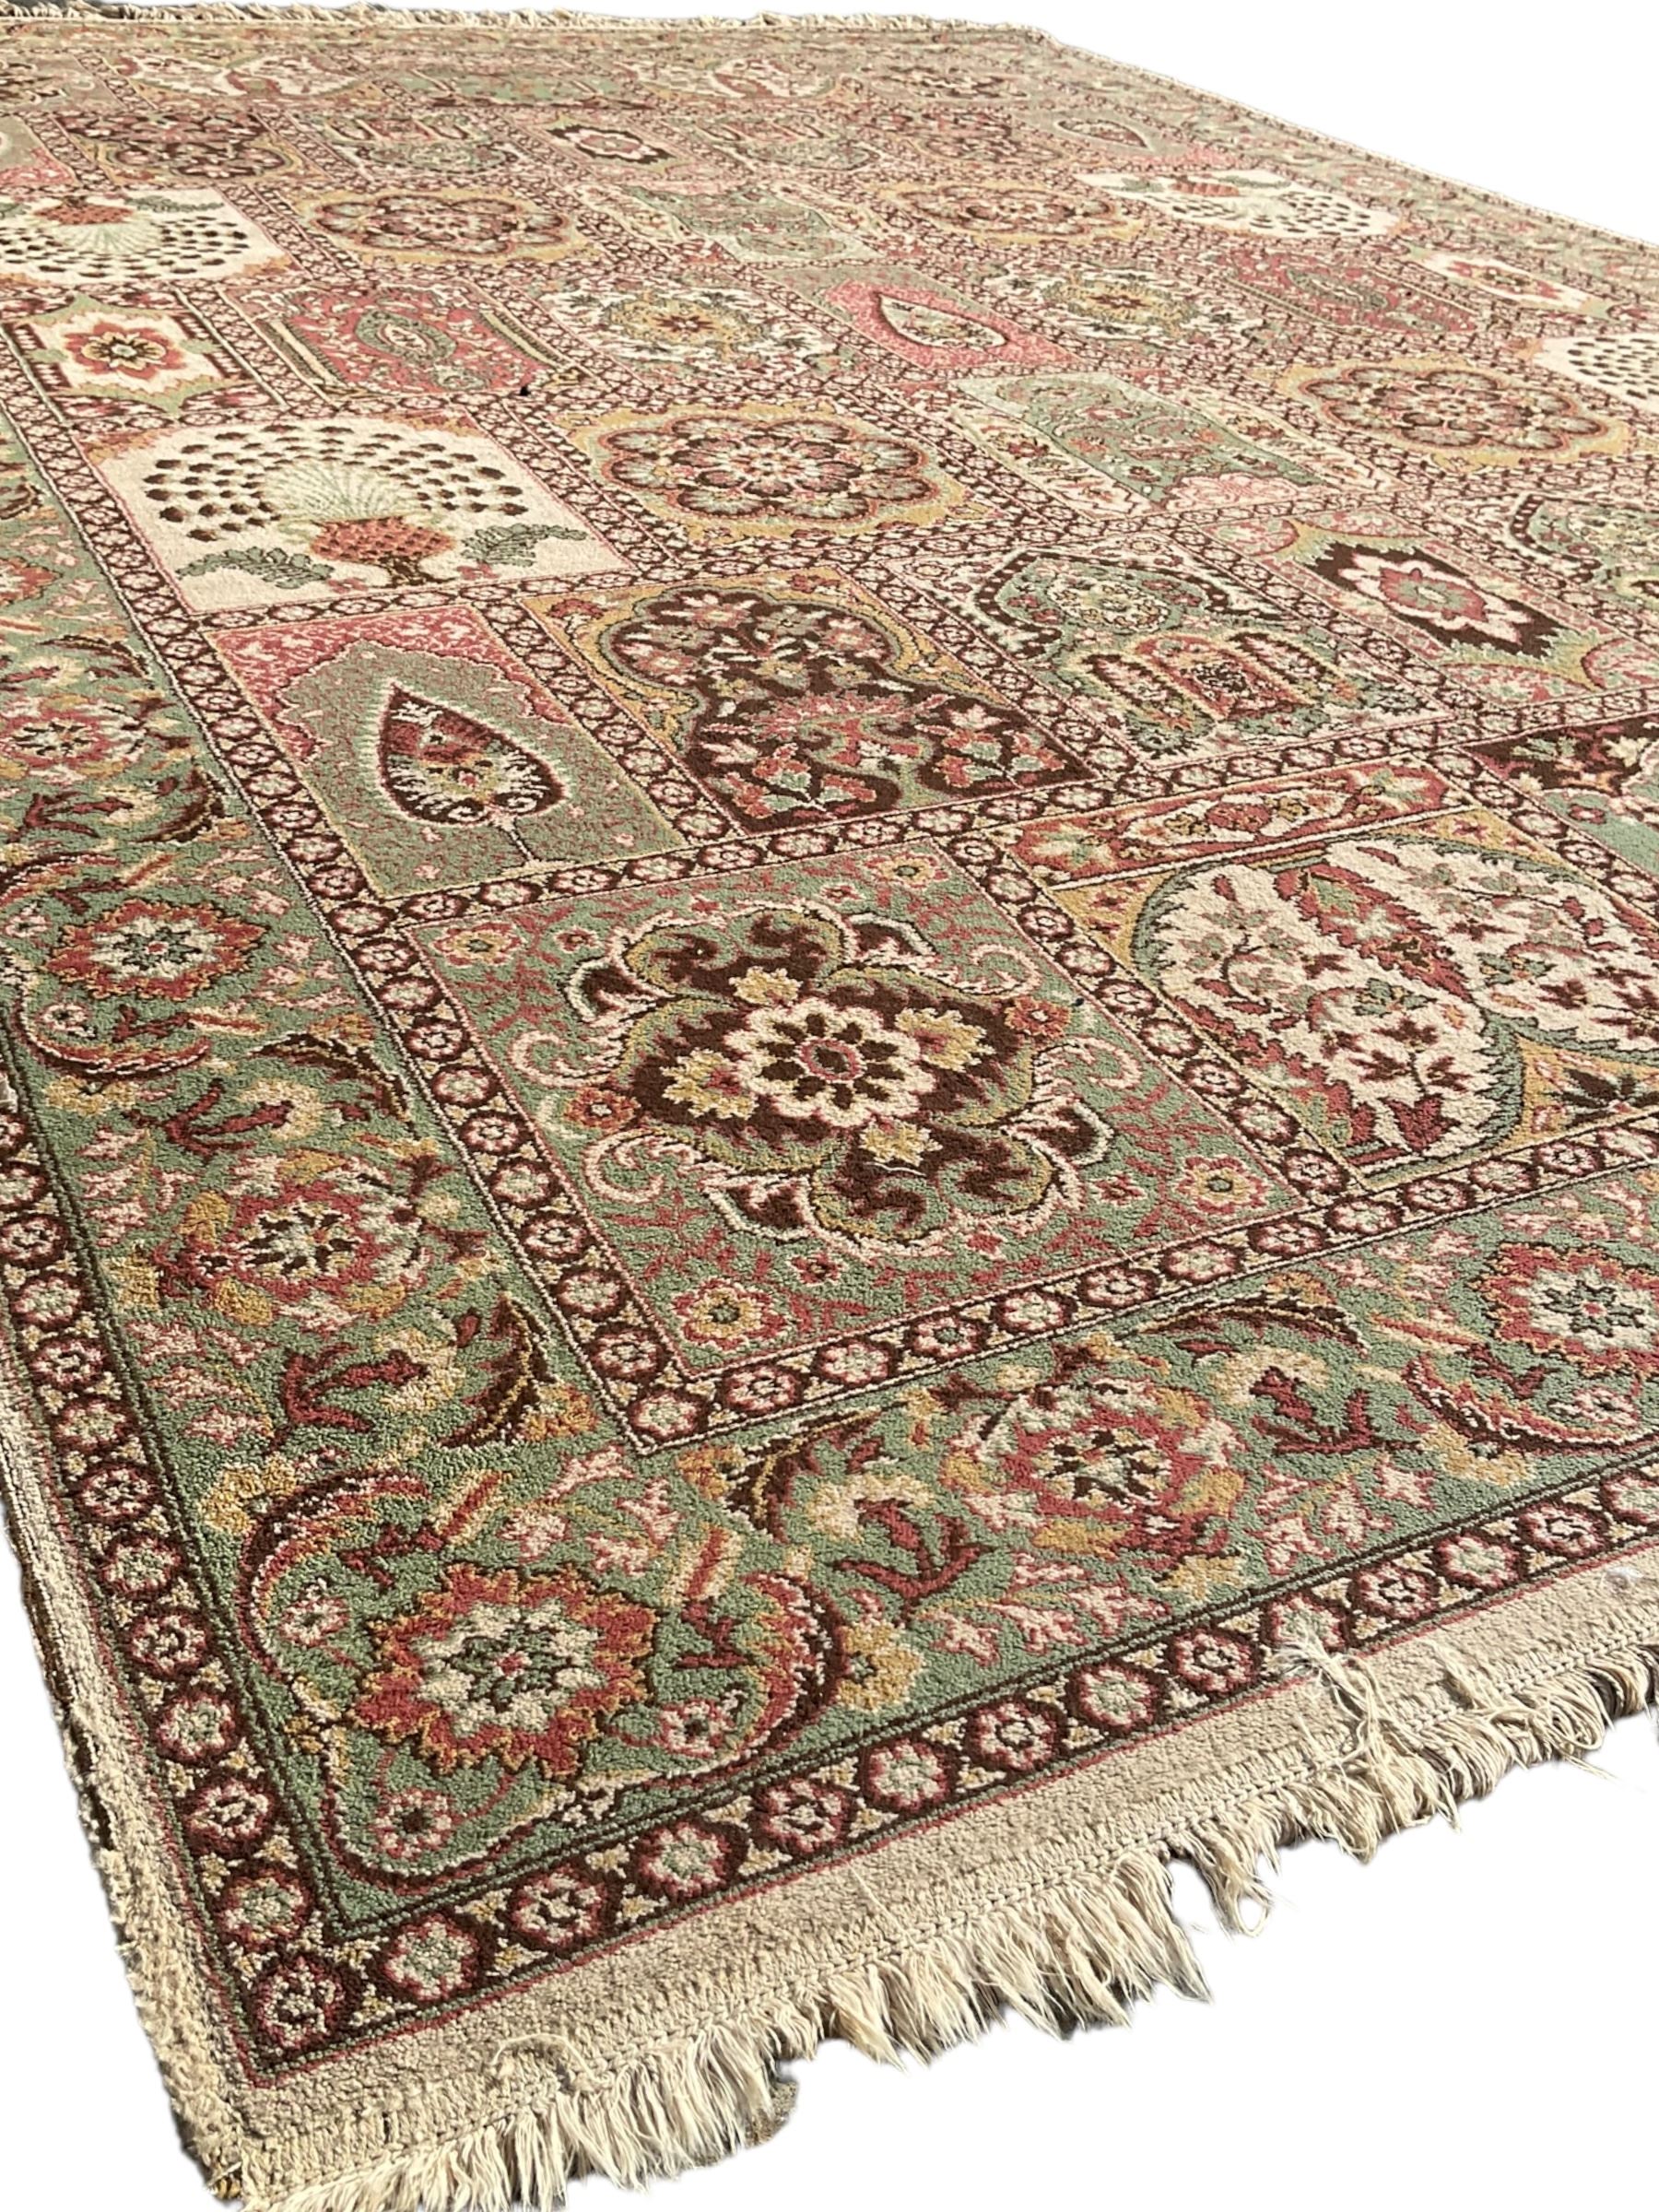 Persian design rug - Image 3 of 5